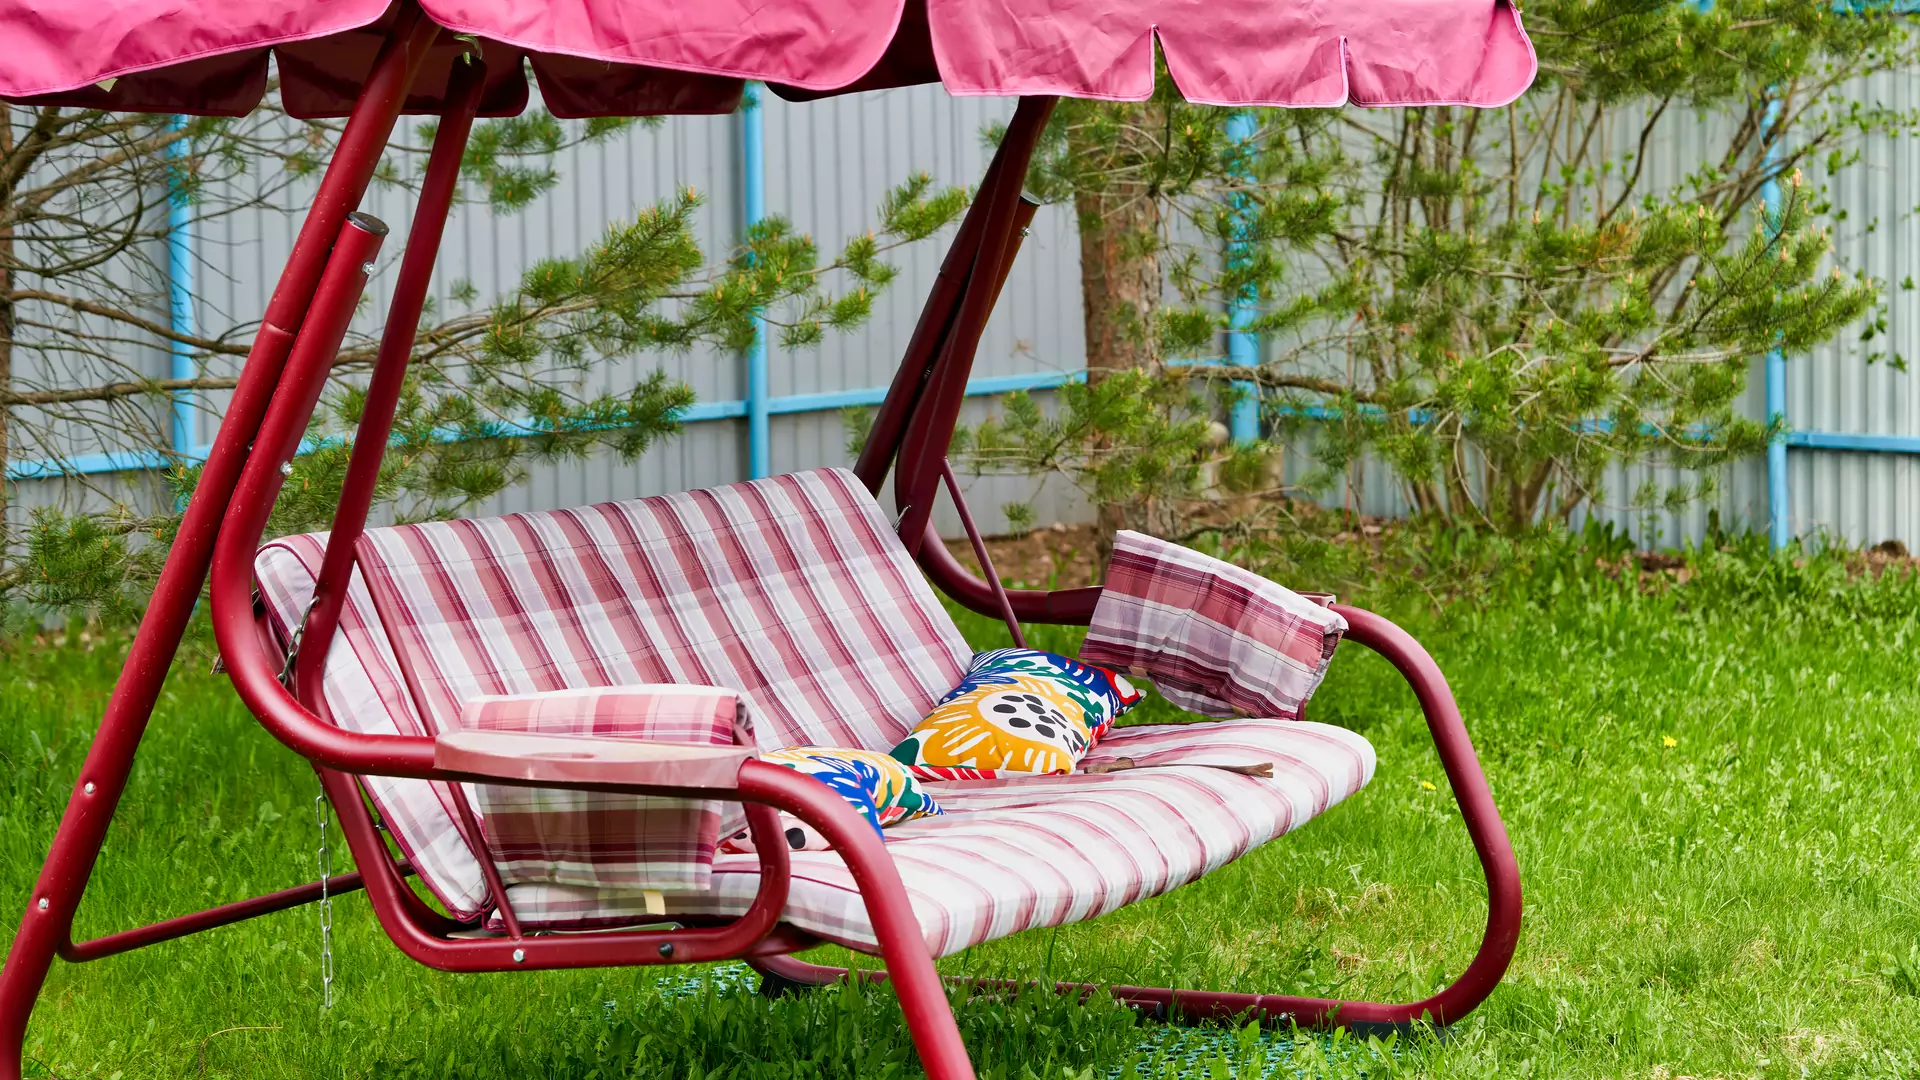 Relaks w ogrodzie — lepsza huśtawka czy rozkładany leżak?